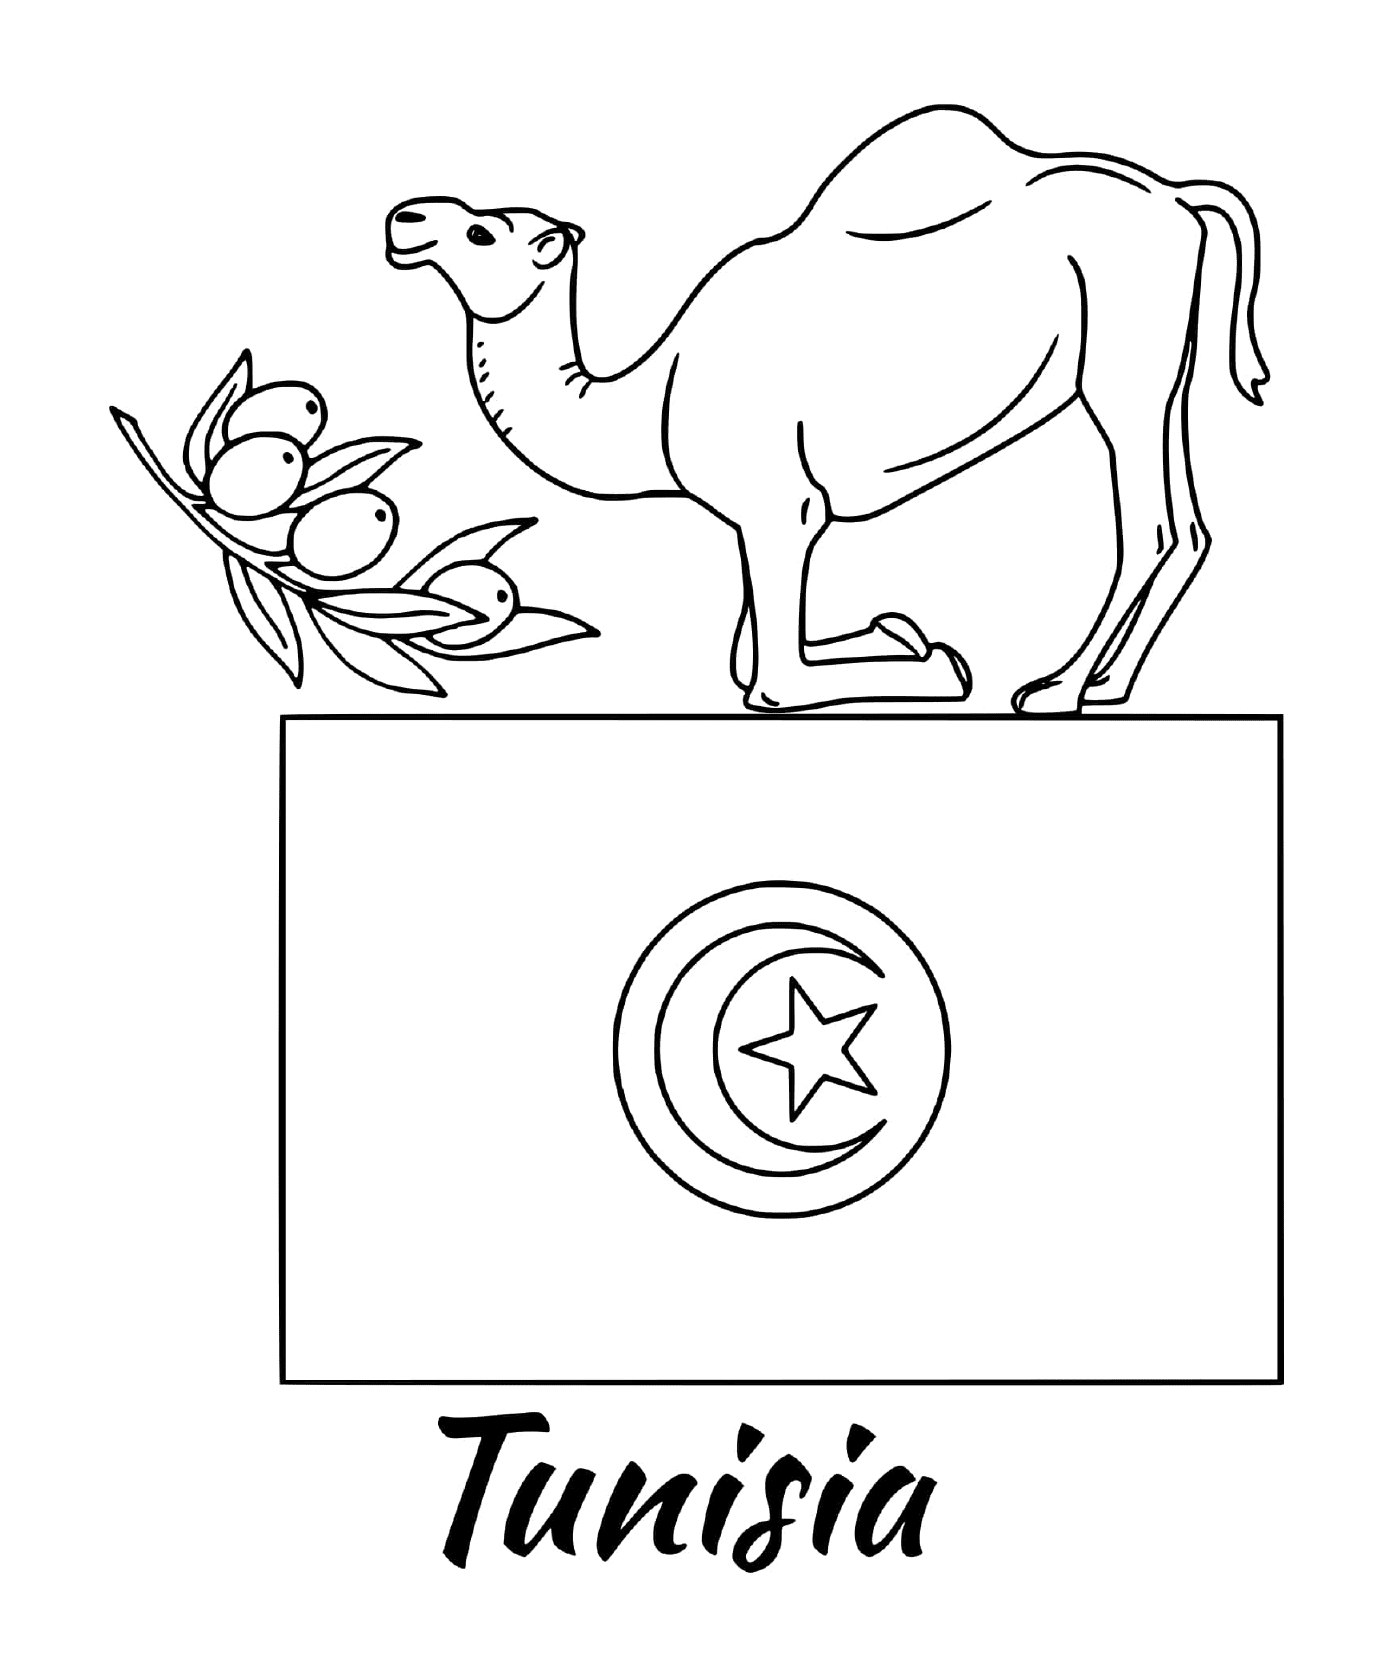  Bandiera della Tunisia con cammello 